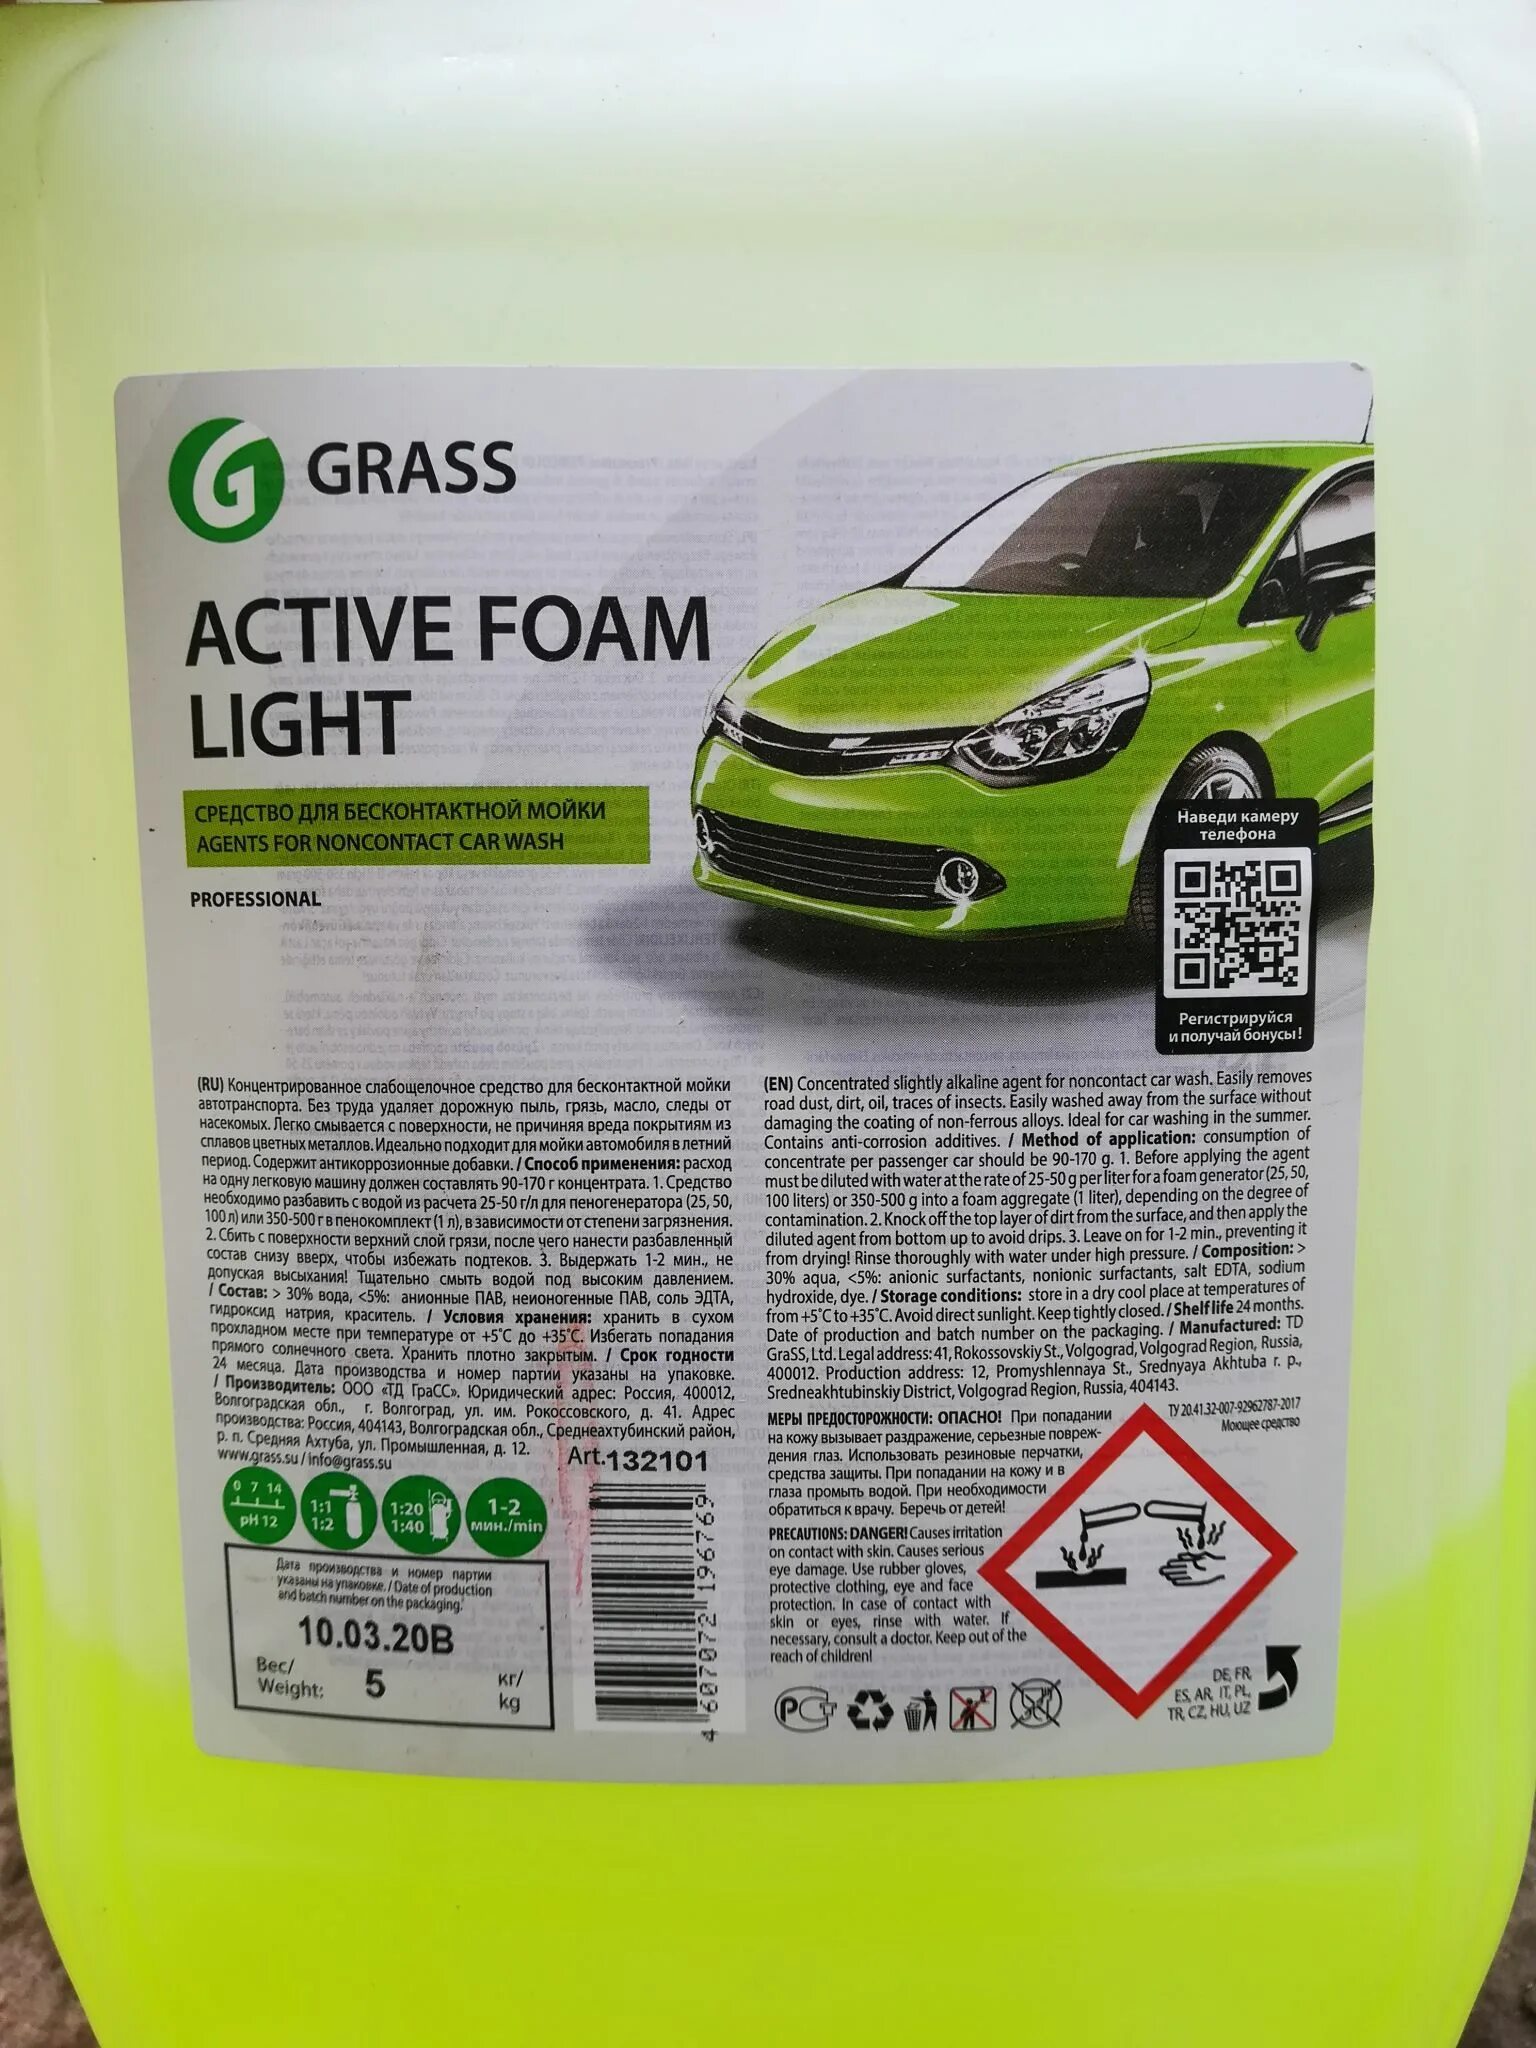 Пена grass active foam. Автошампунь grass Active Foam Light. Грасс Лайт автошампунь 20кг. Dr. Active "Active Foam Optima" 801764. Автошампунь(пена) Active Foam Light 20кг (grass).